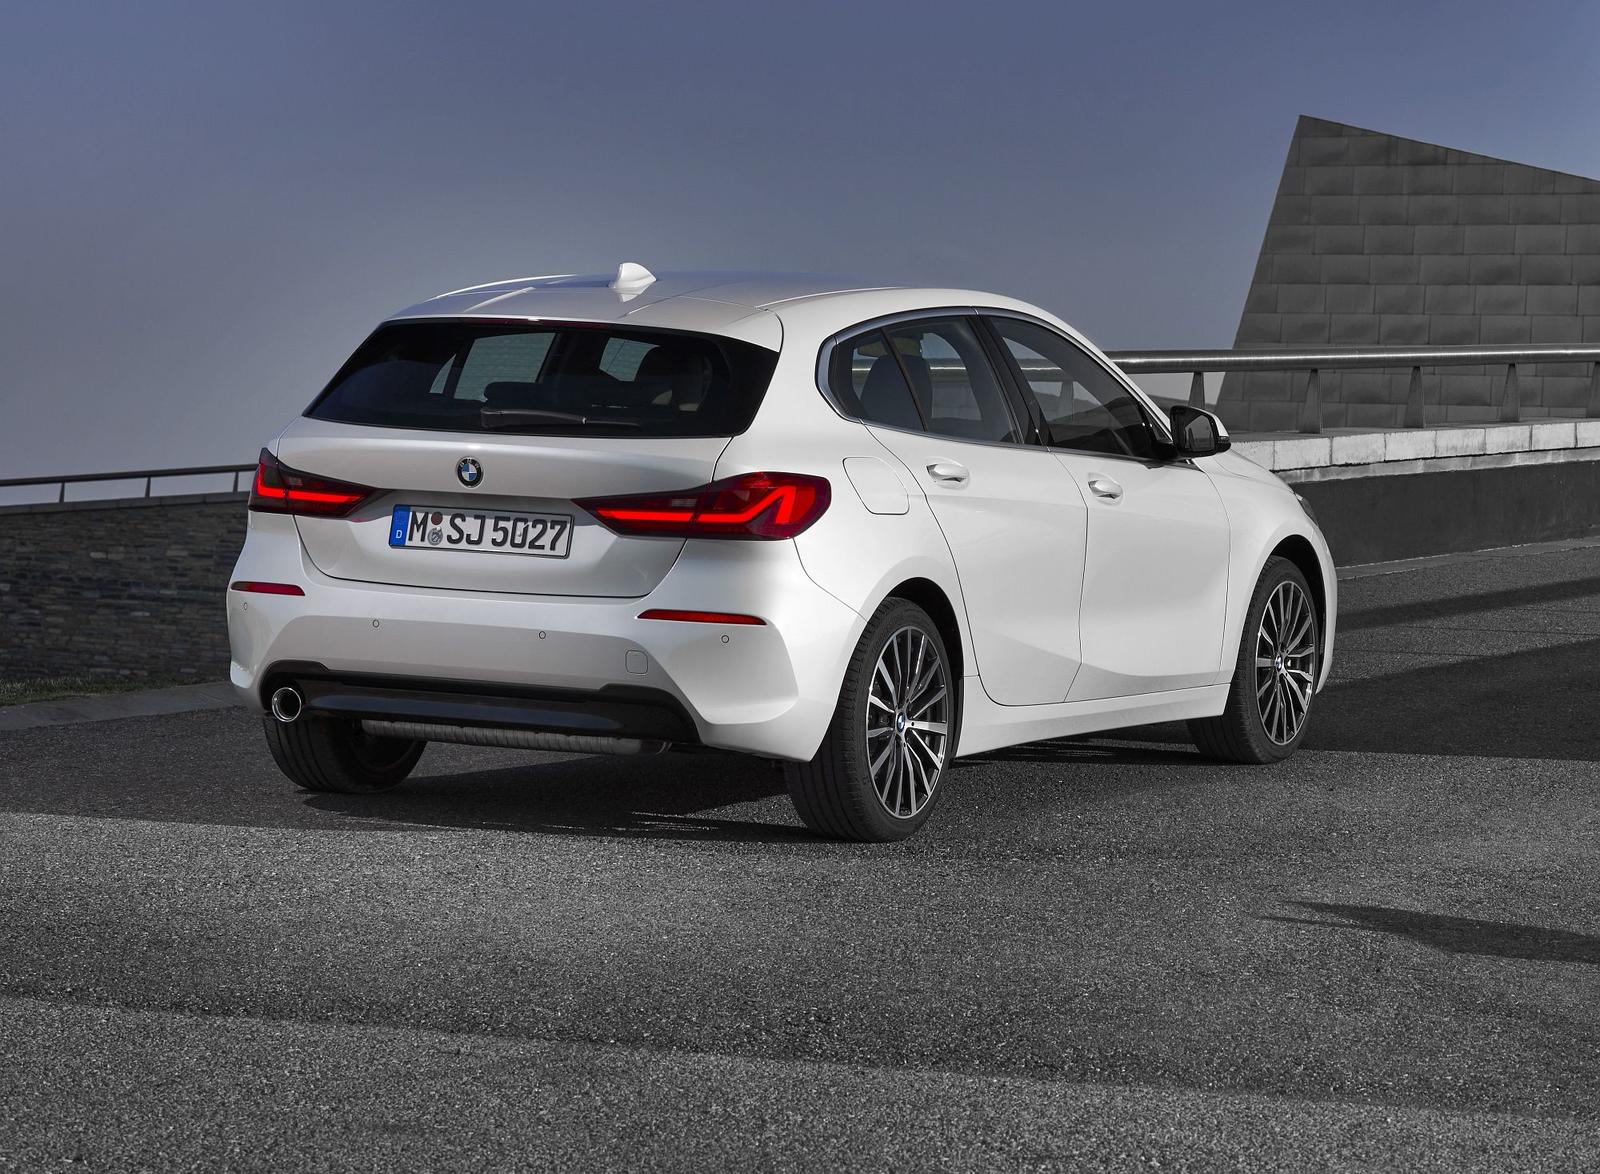 BMW Série 1 2019 oficiais _(66)